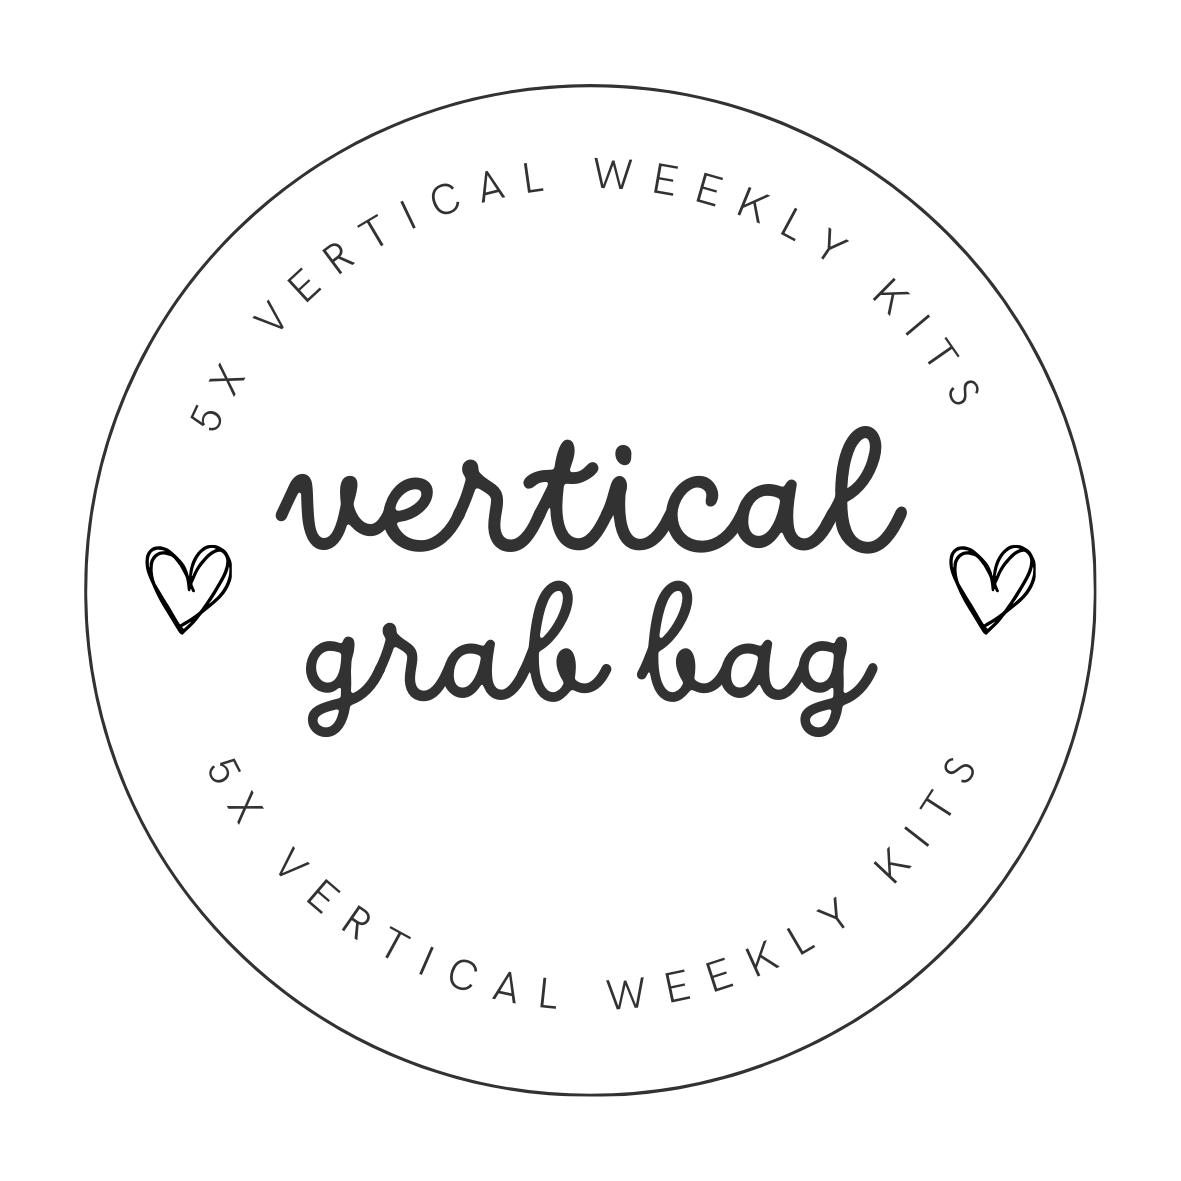 Vertical Grab Bag